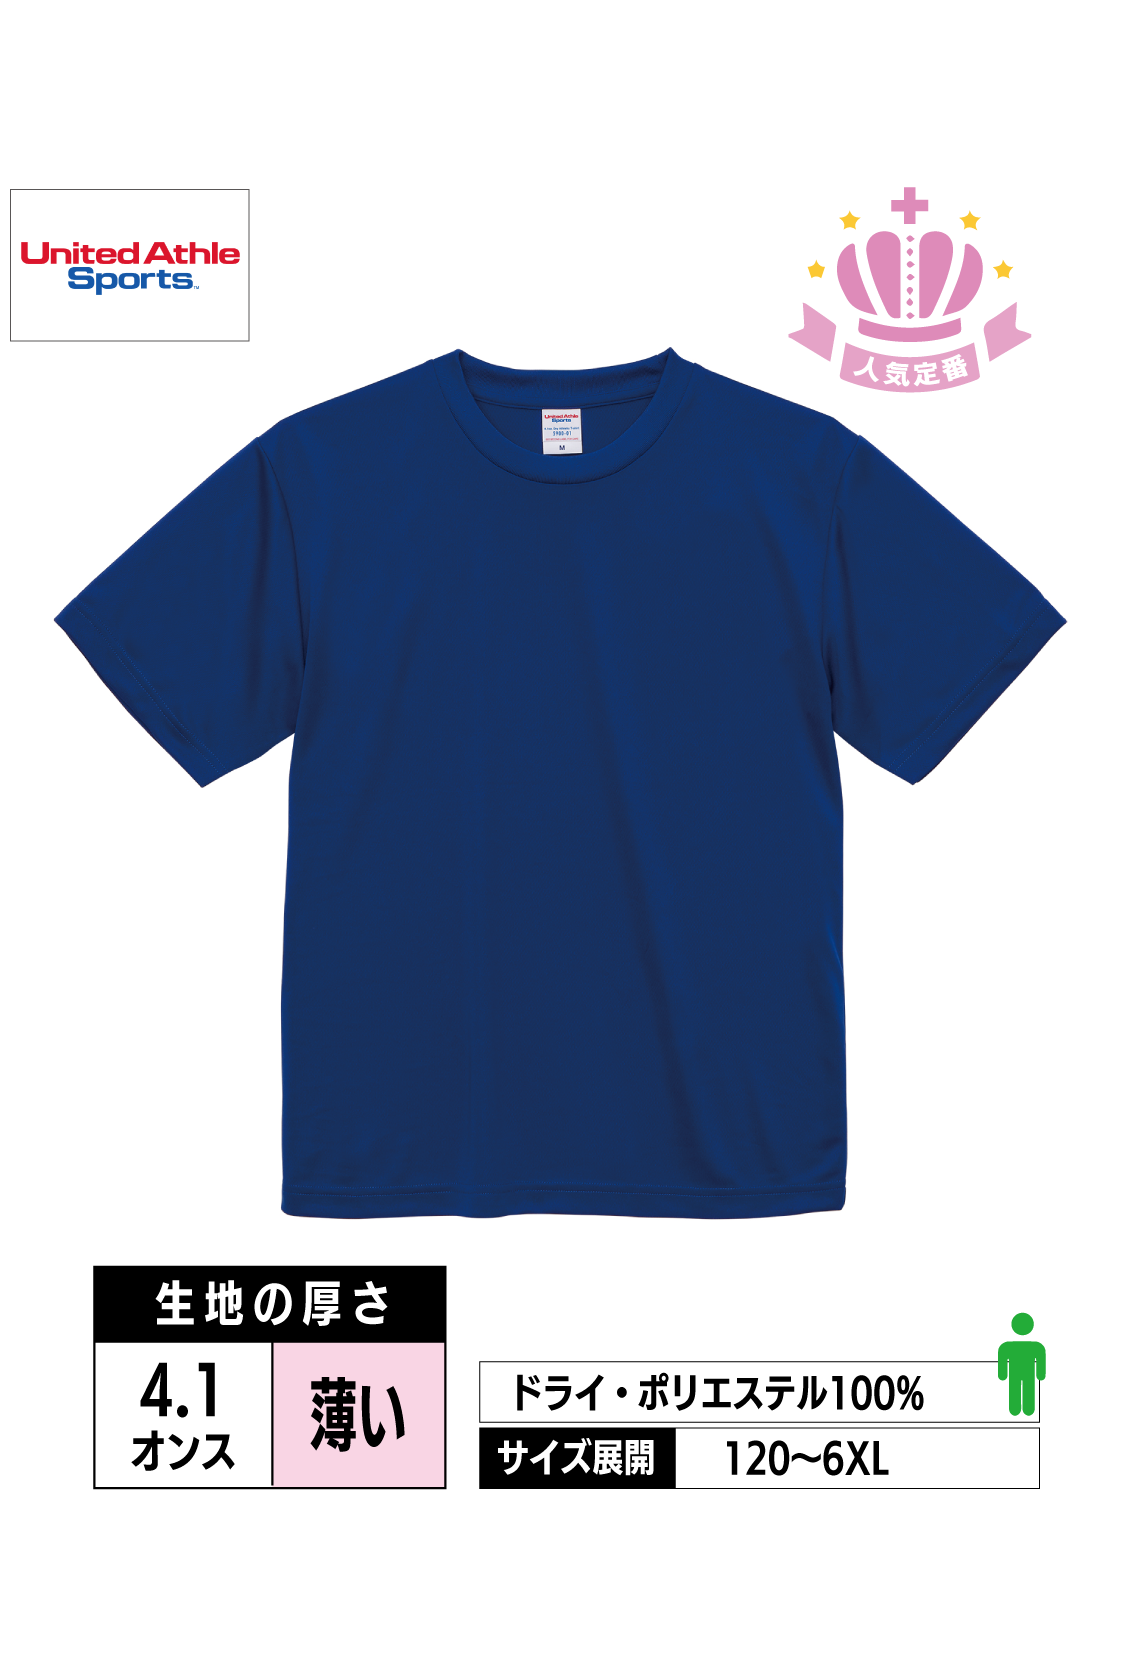 5900-01,02｜4.1オンス ドライアスレチックTシャツ【全40色】United Athle